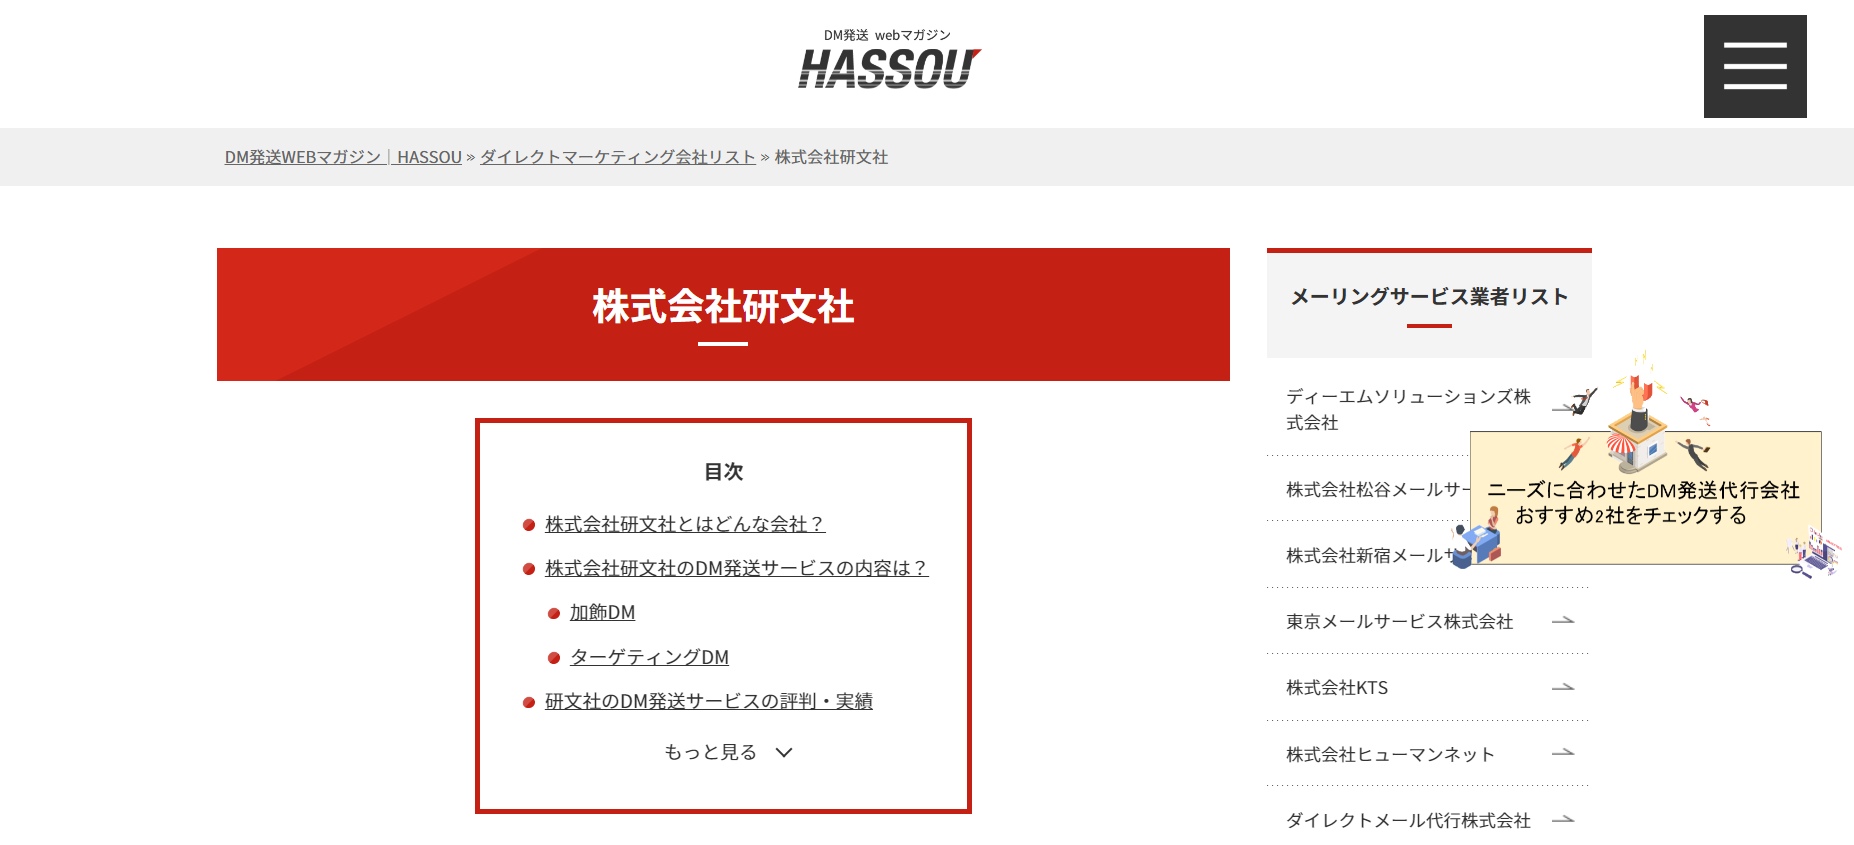 【メディア掲載】弊社DMサービスがDM発送専門メディア『HASSOU』で紹介されました。